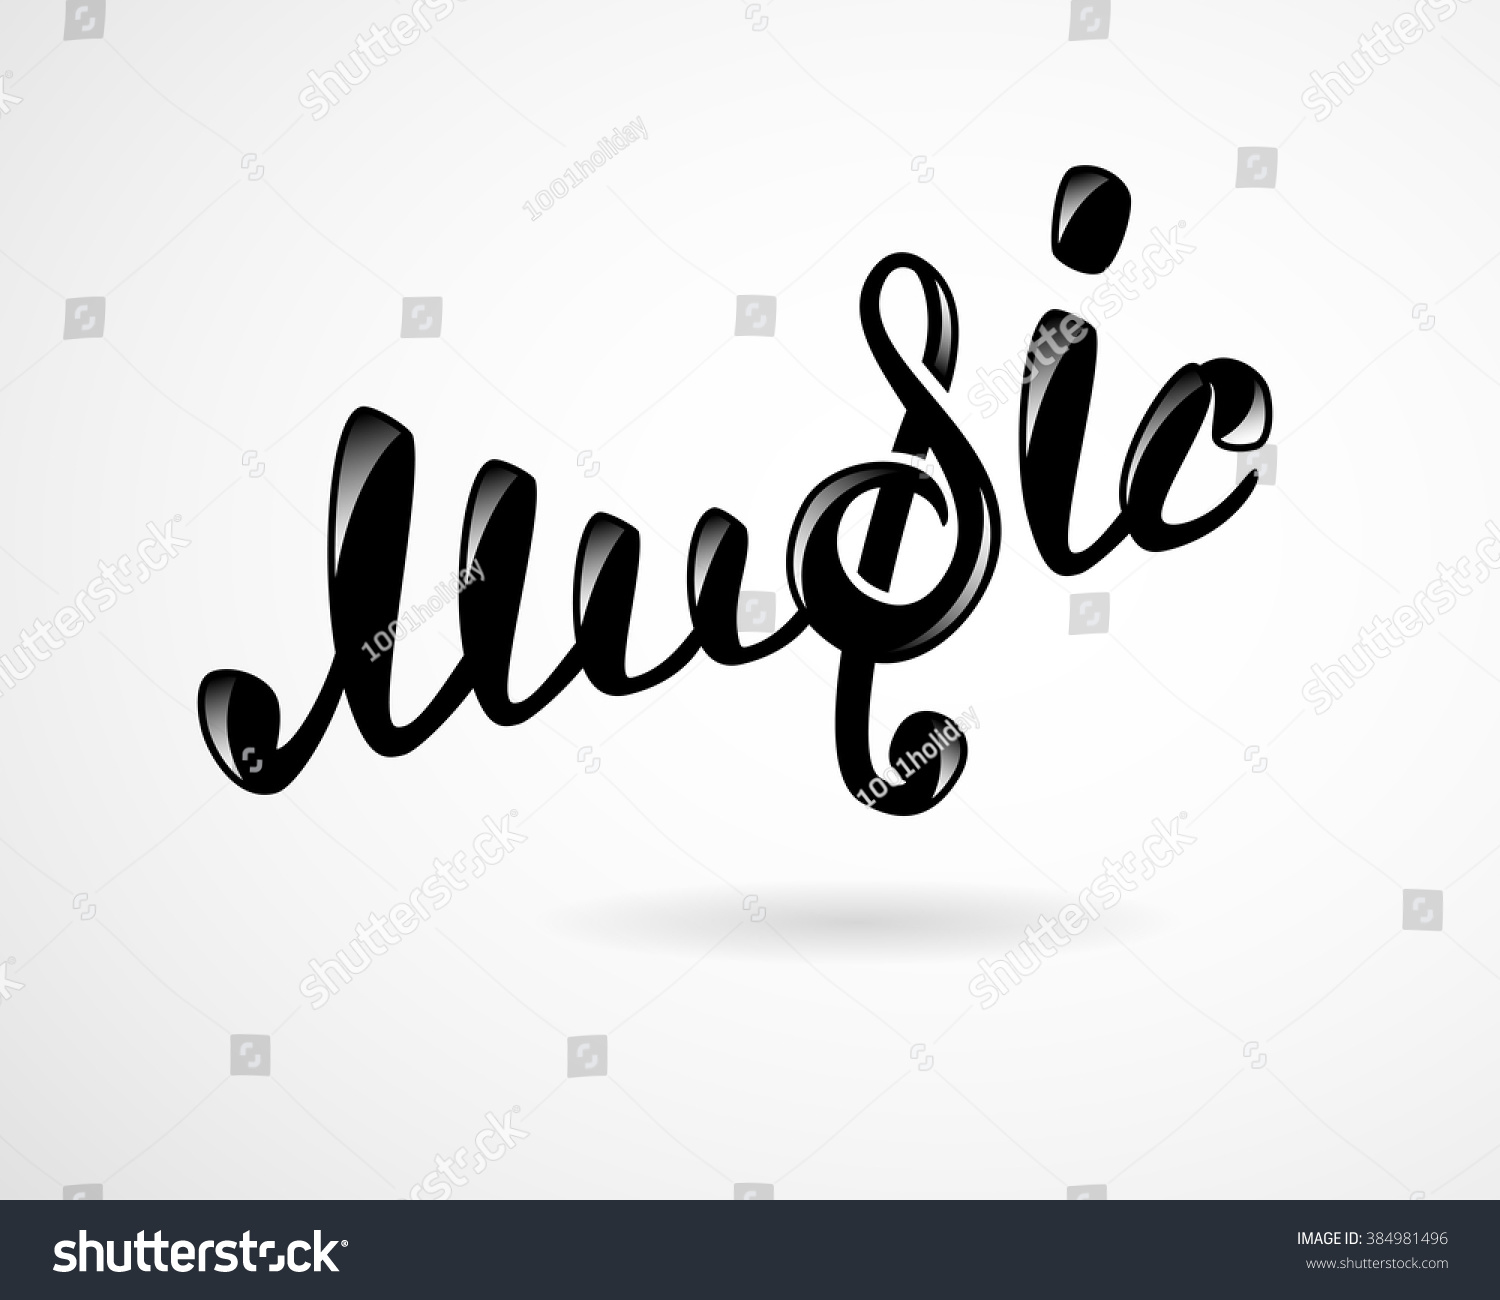 stock-vector-music-logo-on-white-384981496.jpg